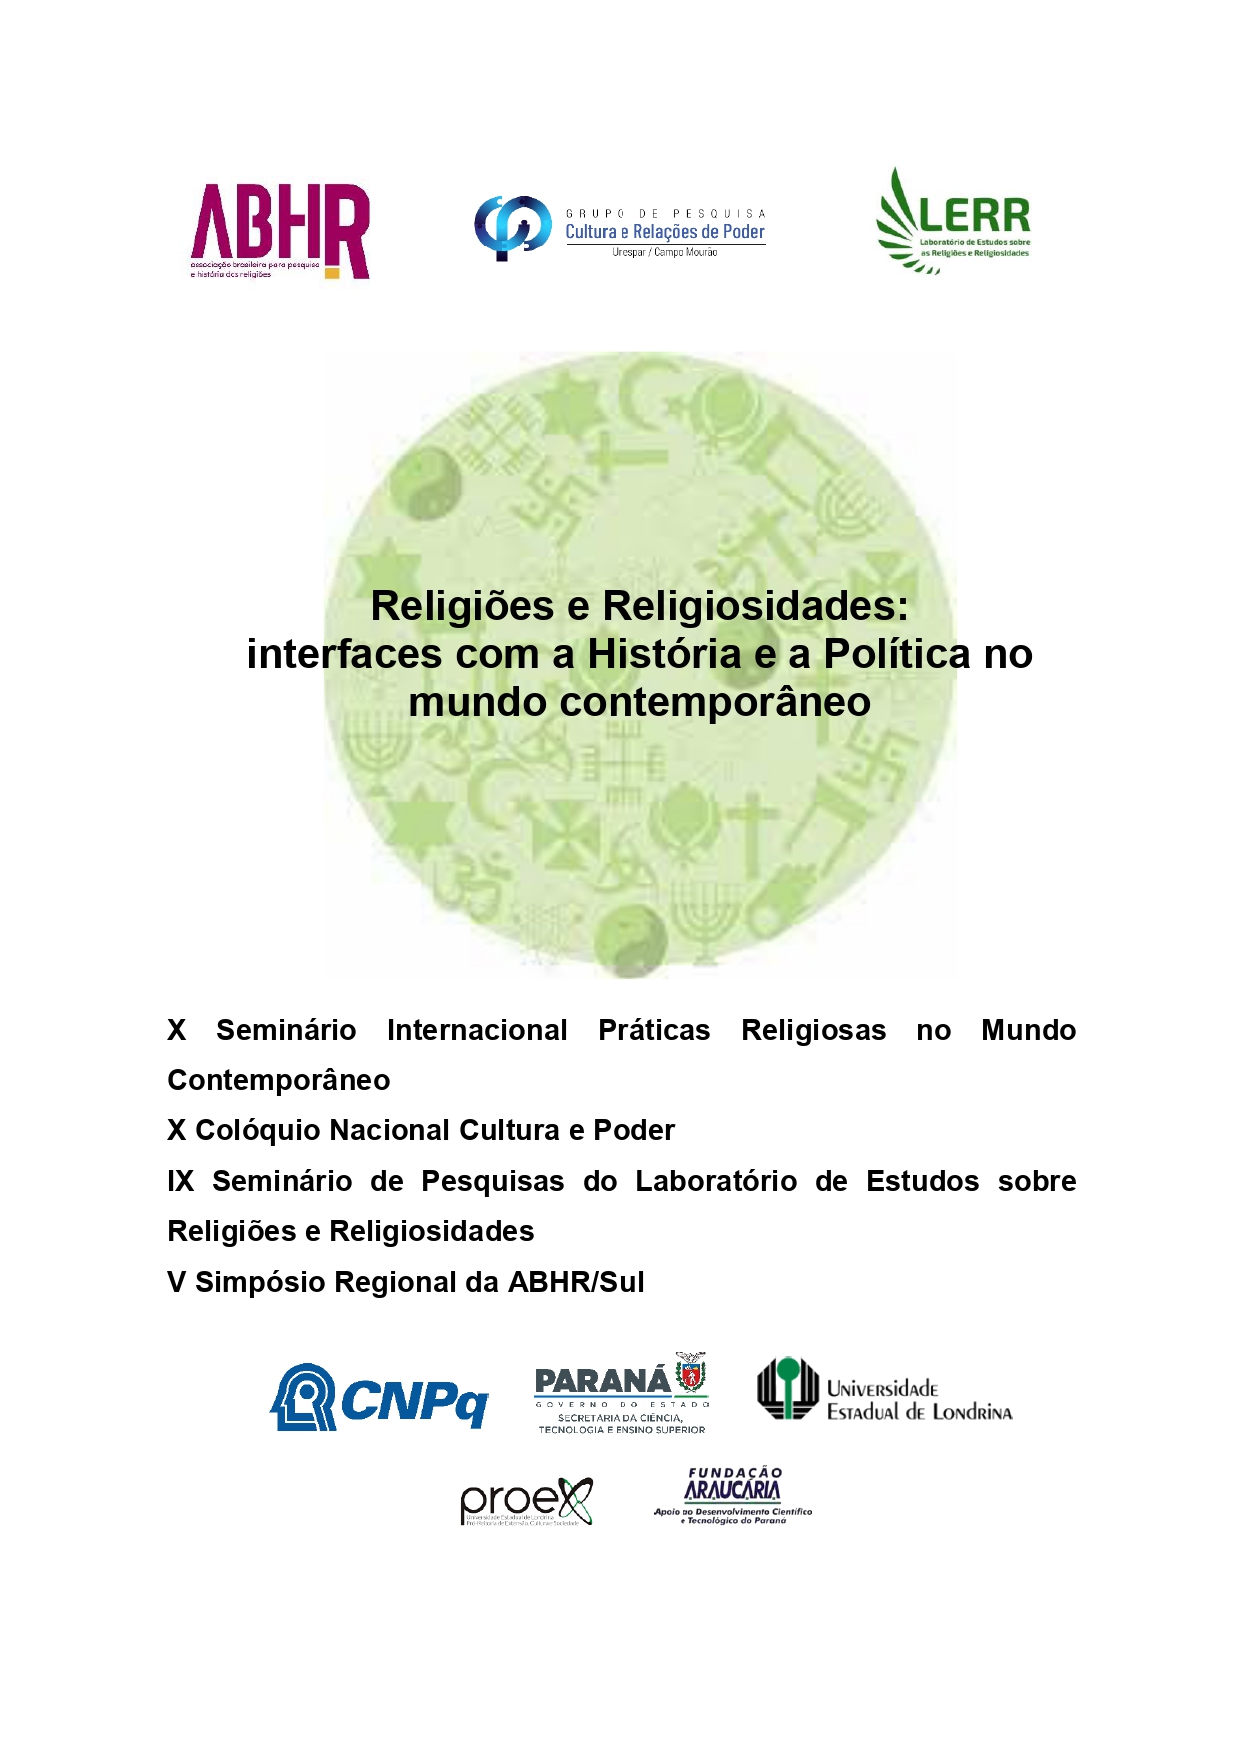 Religiões e Religiosidades: interfaces com a História e a Política no mundo contemporâneo.